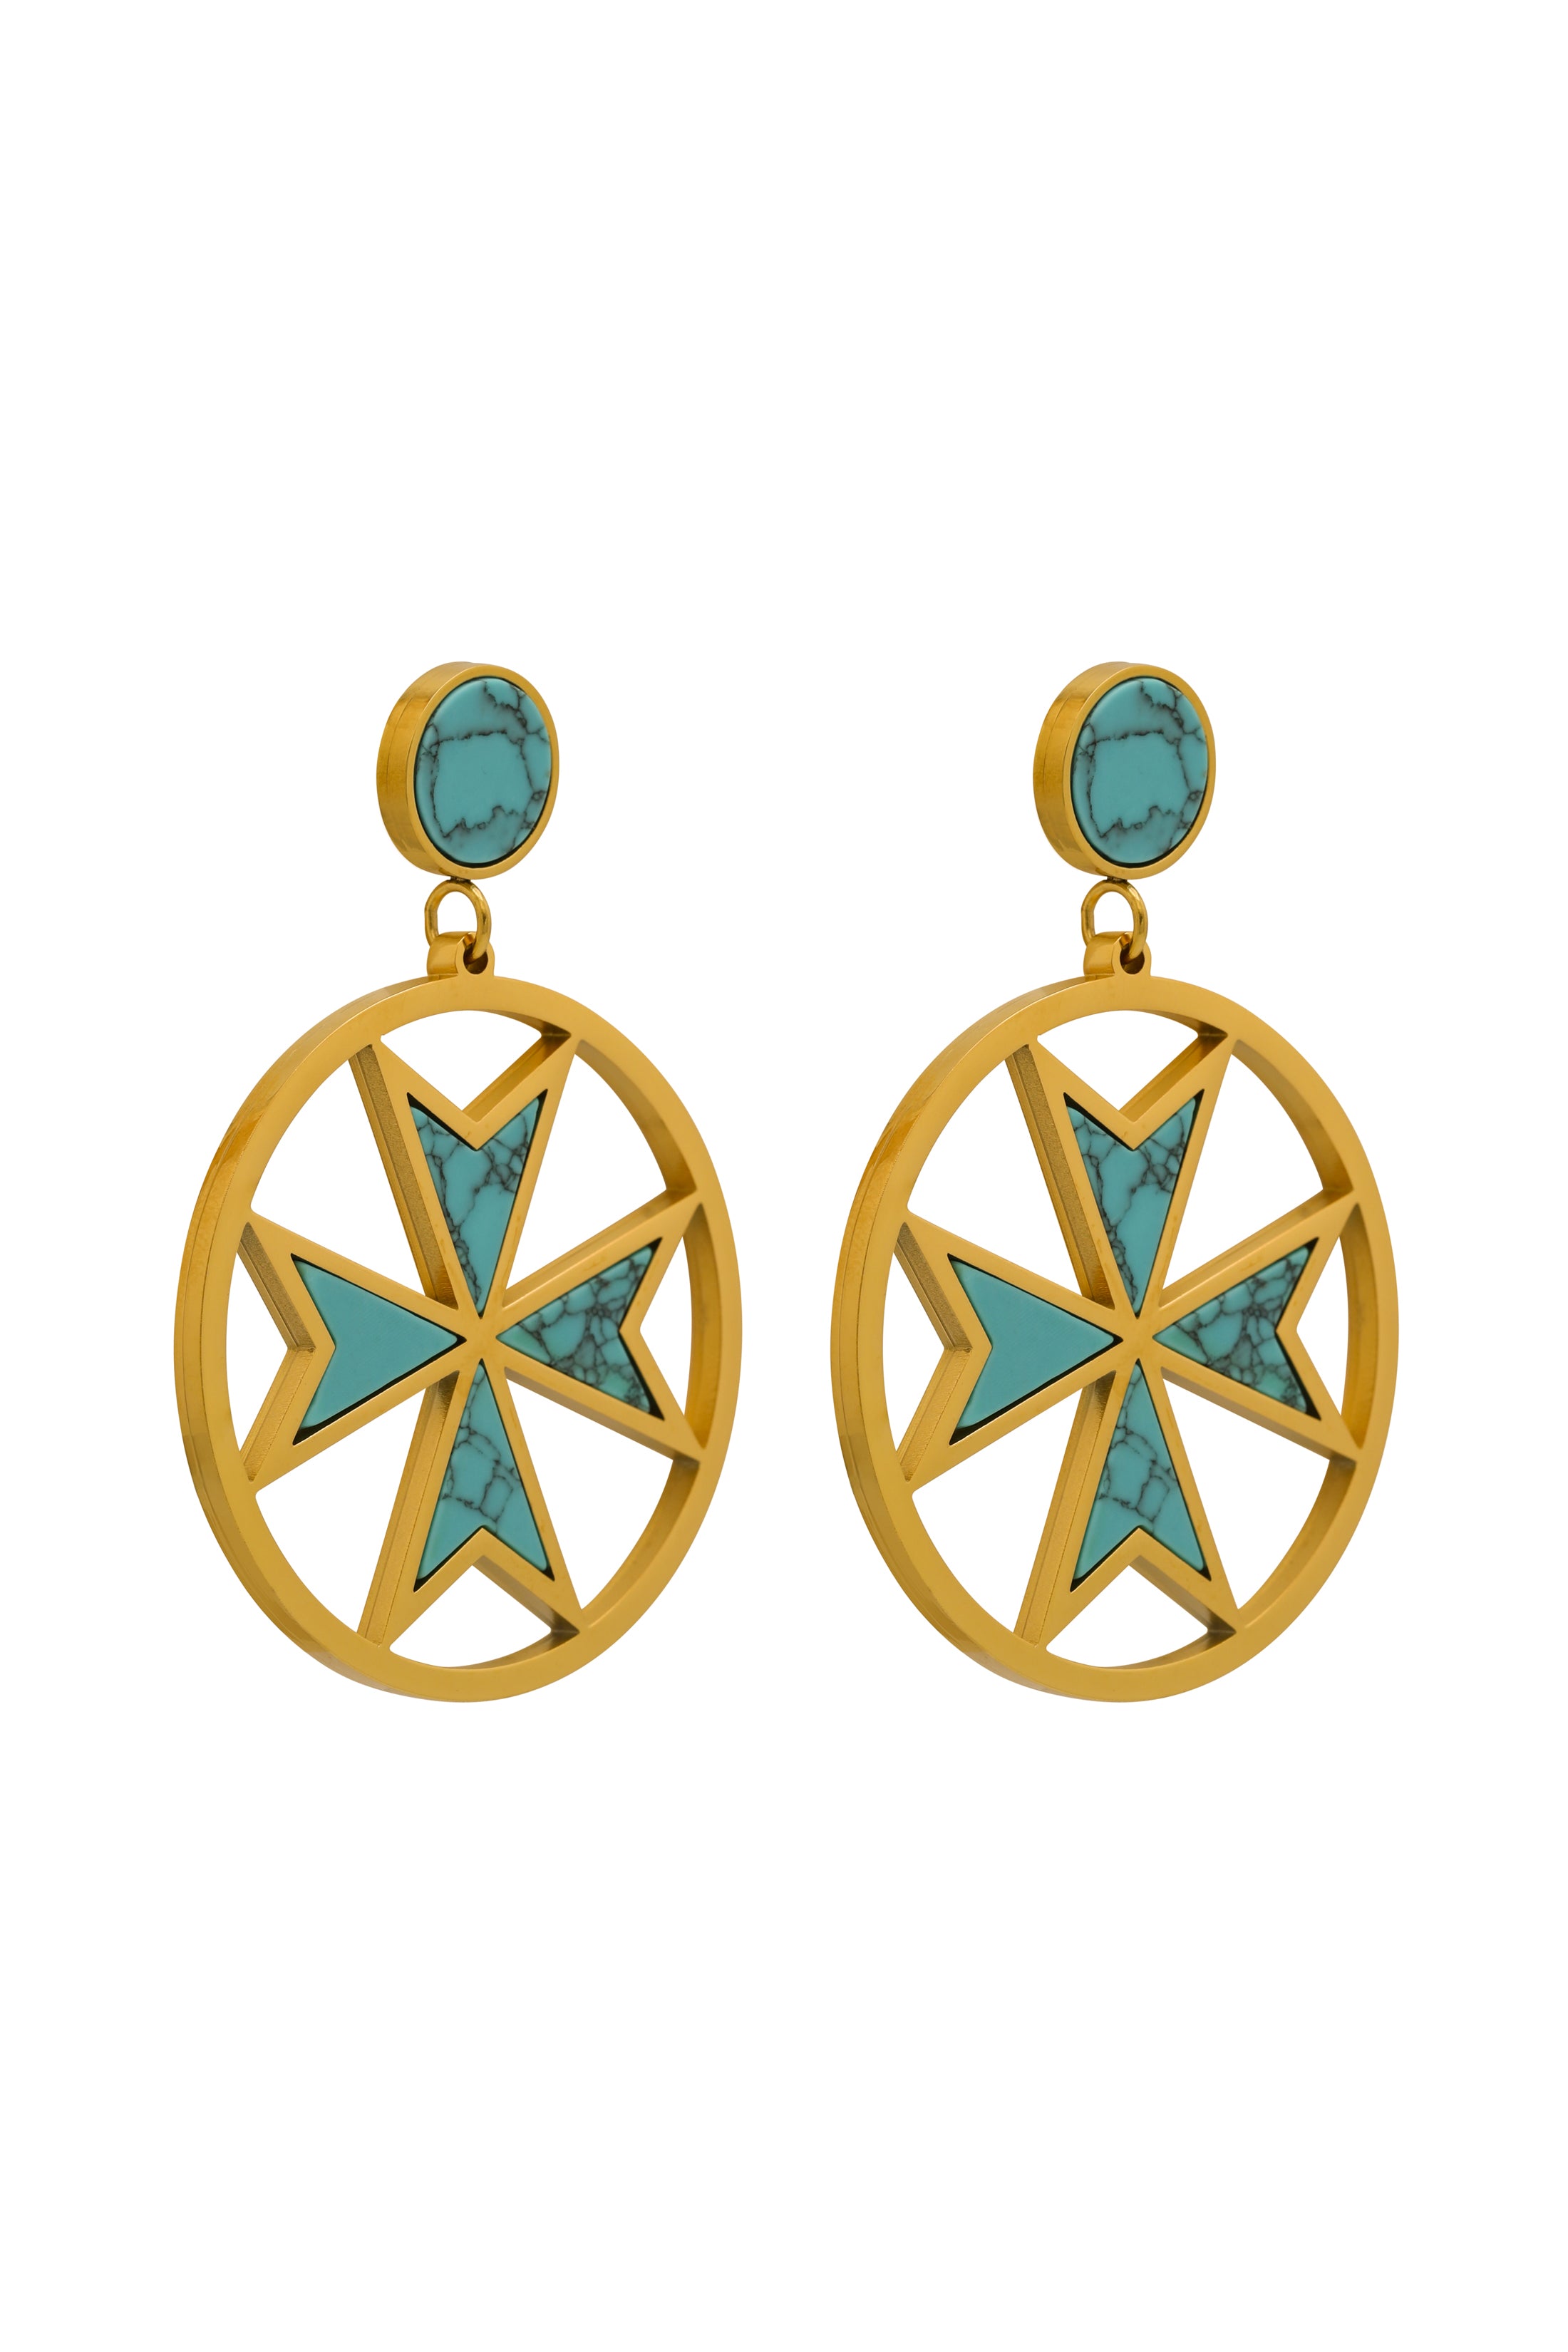 The Turquoise Maltese Cross Pendant &amp; Earrings Gift Set